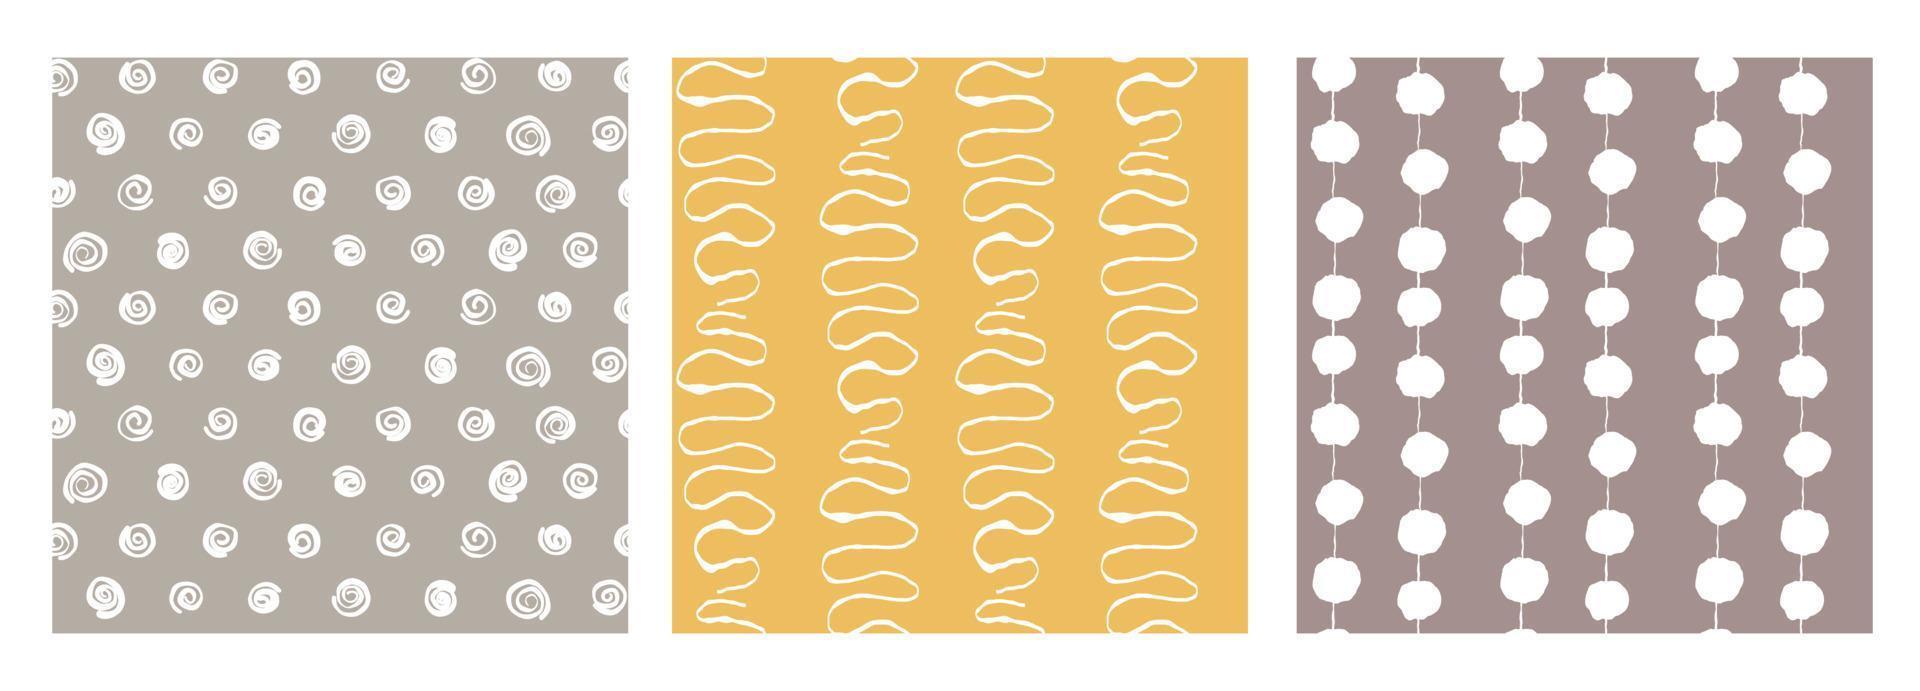 conjunto de patrones coloridos modernos sin costuras geométricos abstractos dibujados a mano. linda colección de vectores marrón, amarillo, garabato blanco para papel, tela escandinava, libro, cocina, niños.